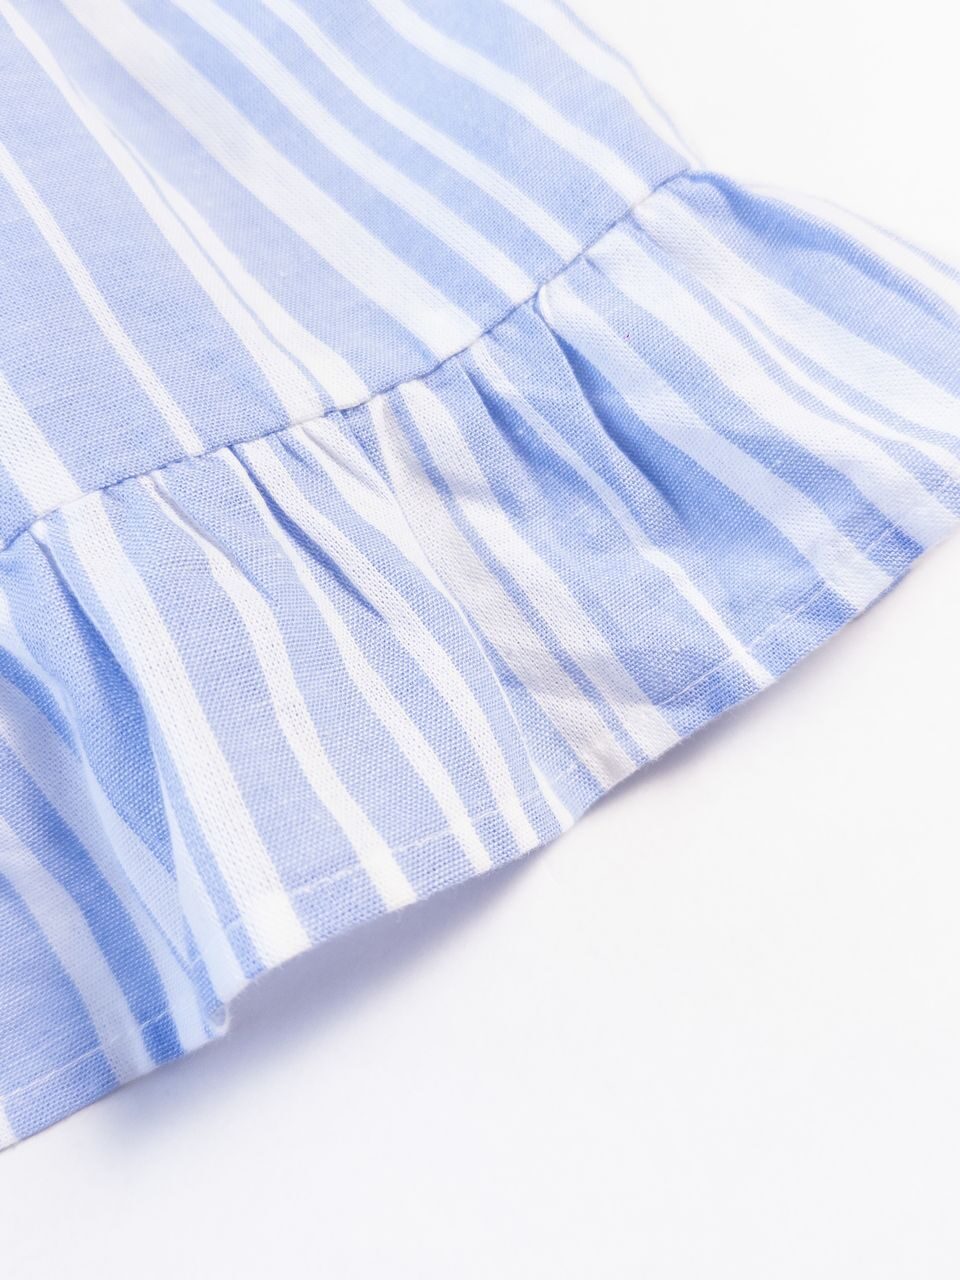 Блуза хлопковая сзади на пуговицах цвет голубой/белая полоска на рост 104 см 3-4 года Primark